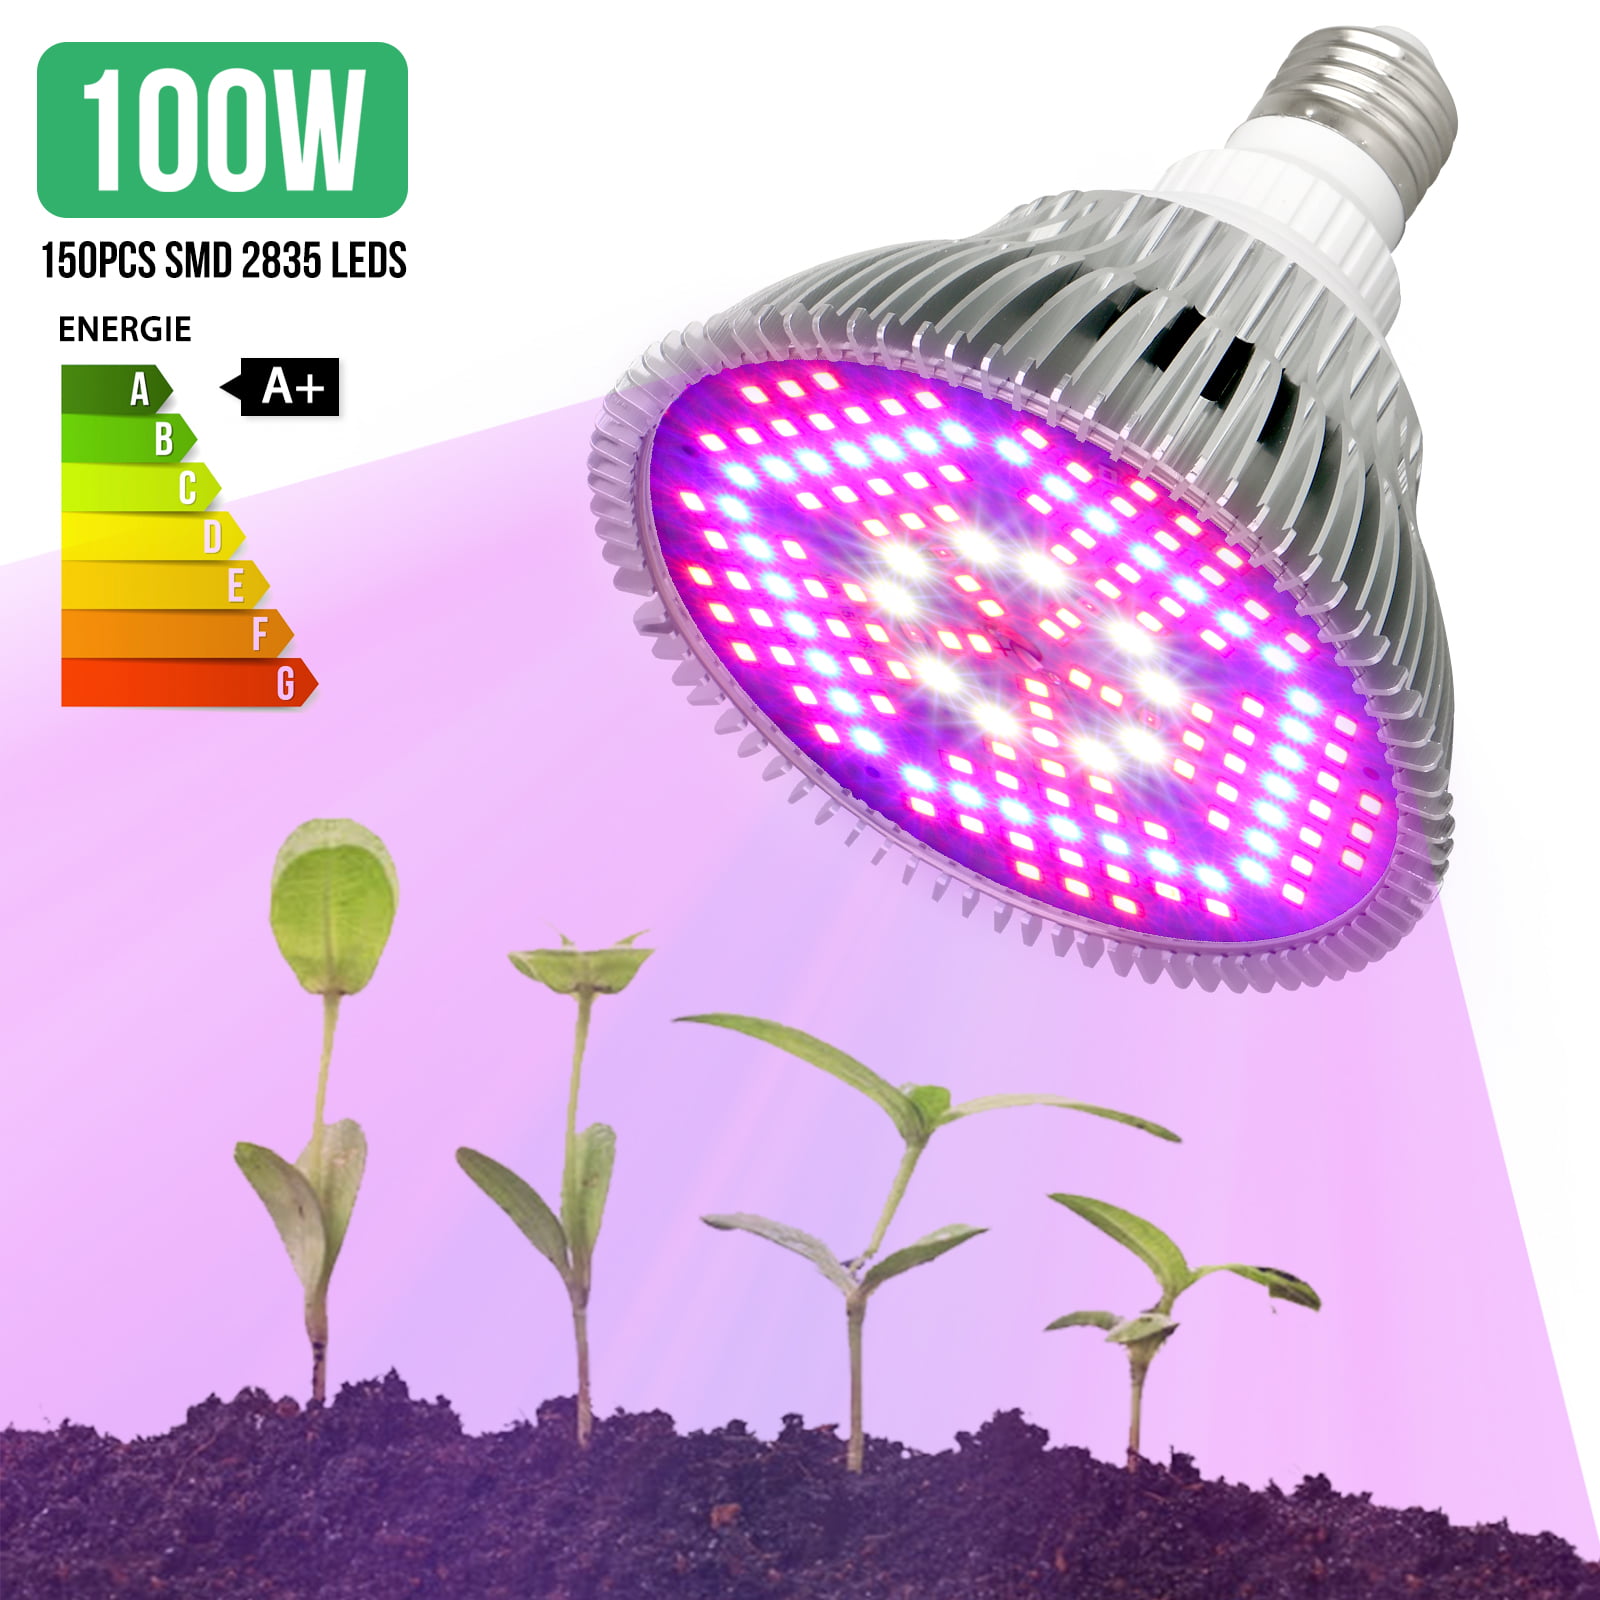 100W 290 LED Grow Light Bulb Plant Grow Lamp E27 Full Spectrum Garden Fruit Veg 